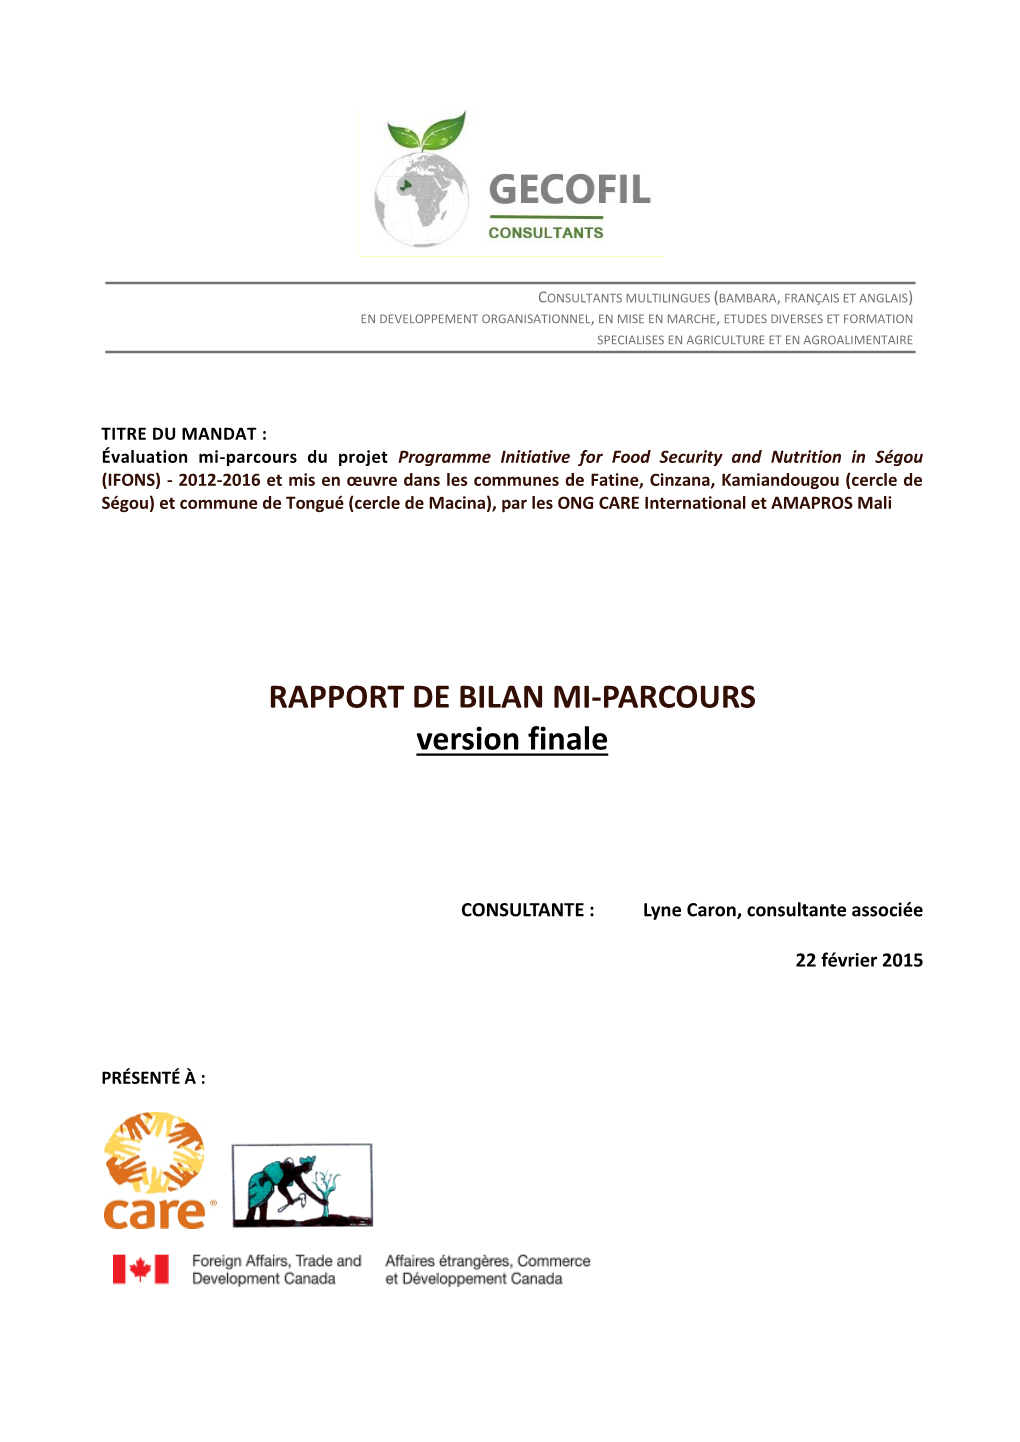 RAPPORT DE BILAN MI-PARCOURS Version Finale